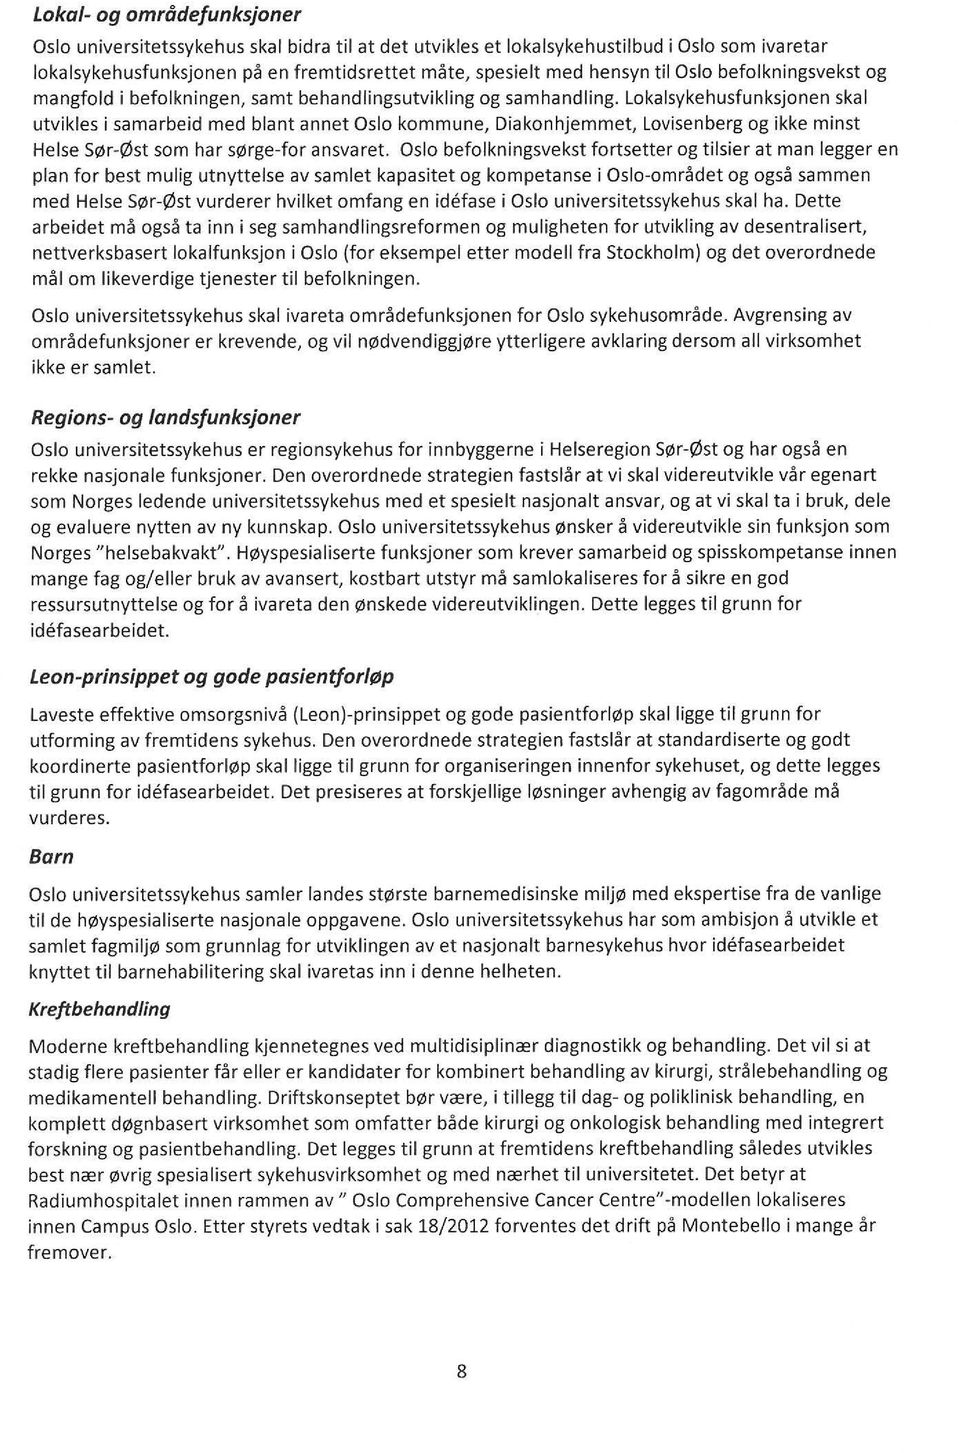 Lkalsykehusfunksjnen skal utvikles i samarbeid med blant annet Osl kmmune, Diaknhjemmet, Lvisenberg g ikke minst Helse Sør-øst sm har sørge-fr ansvaret.